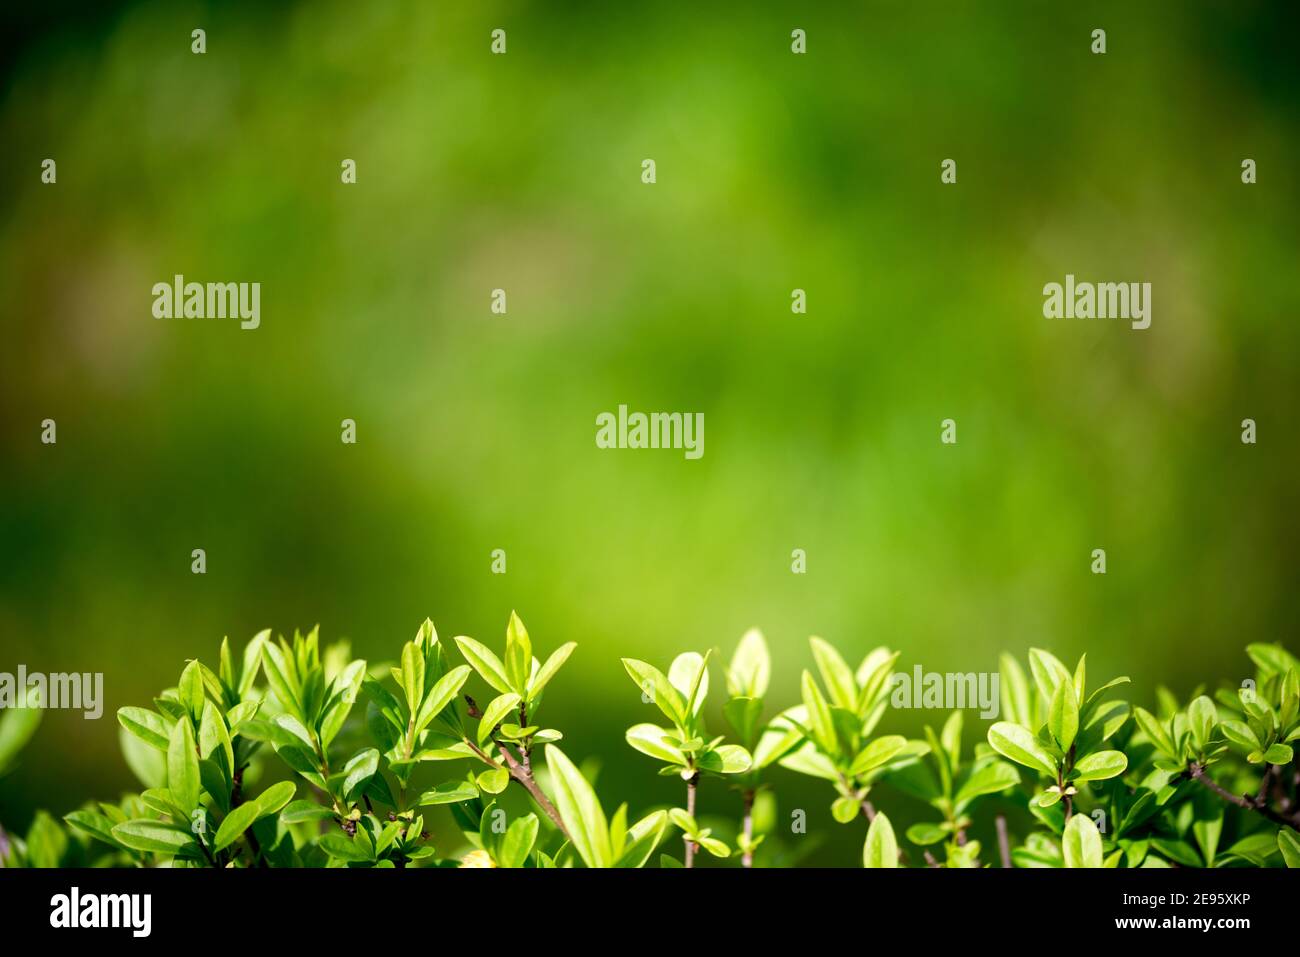 Hintergrund für Design mit Strauchblättern. Schöner Hintergrund mit viel Grün. Nture Hintergrund. Stockfoto